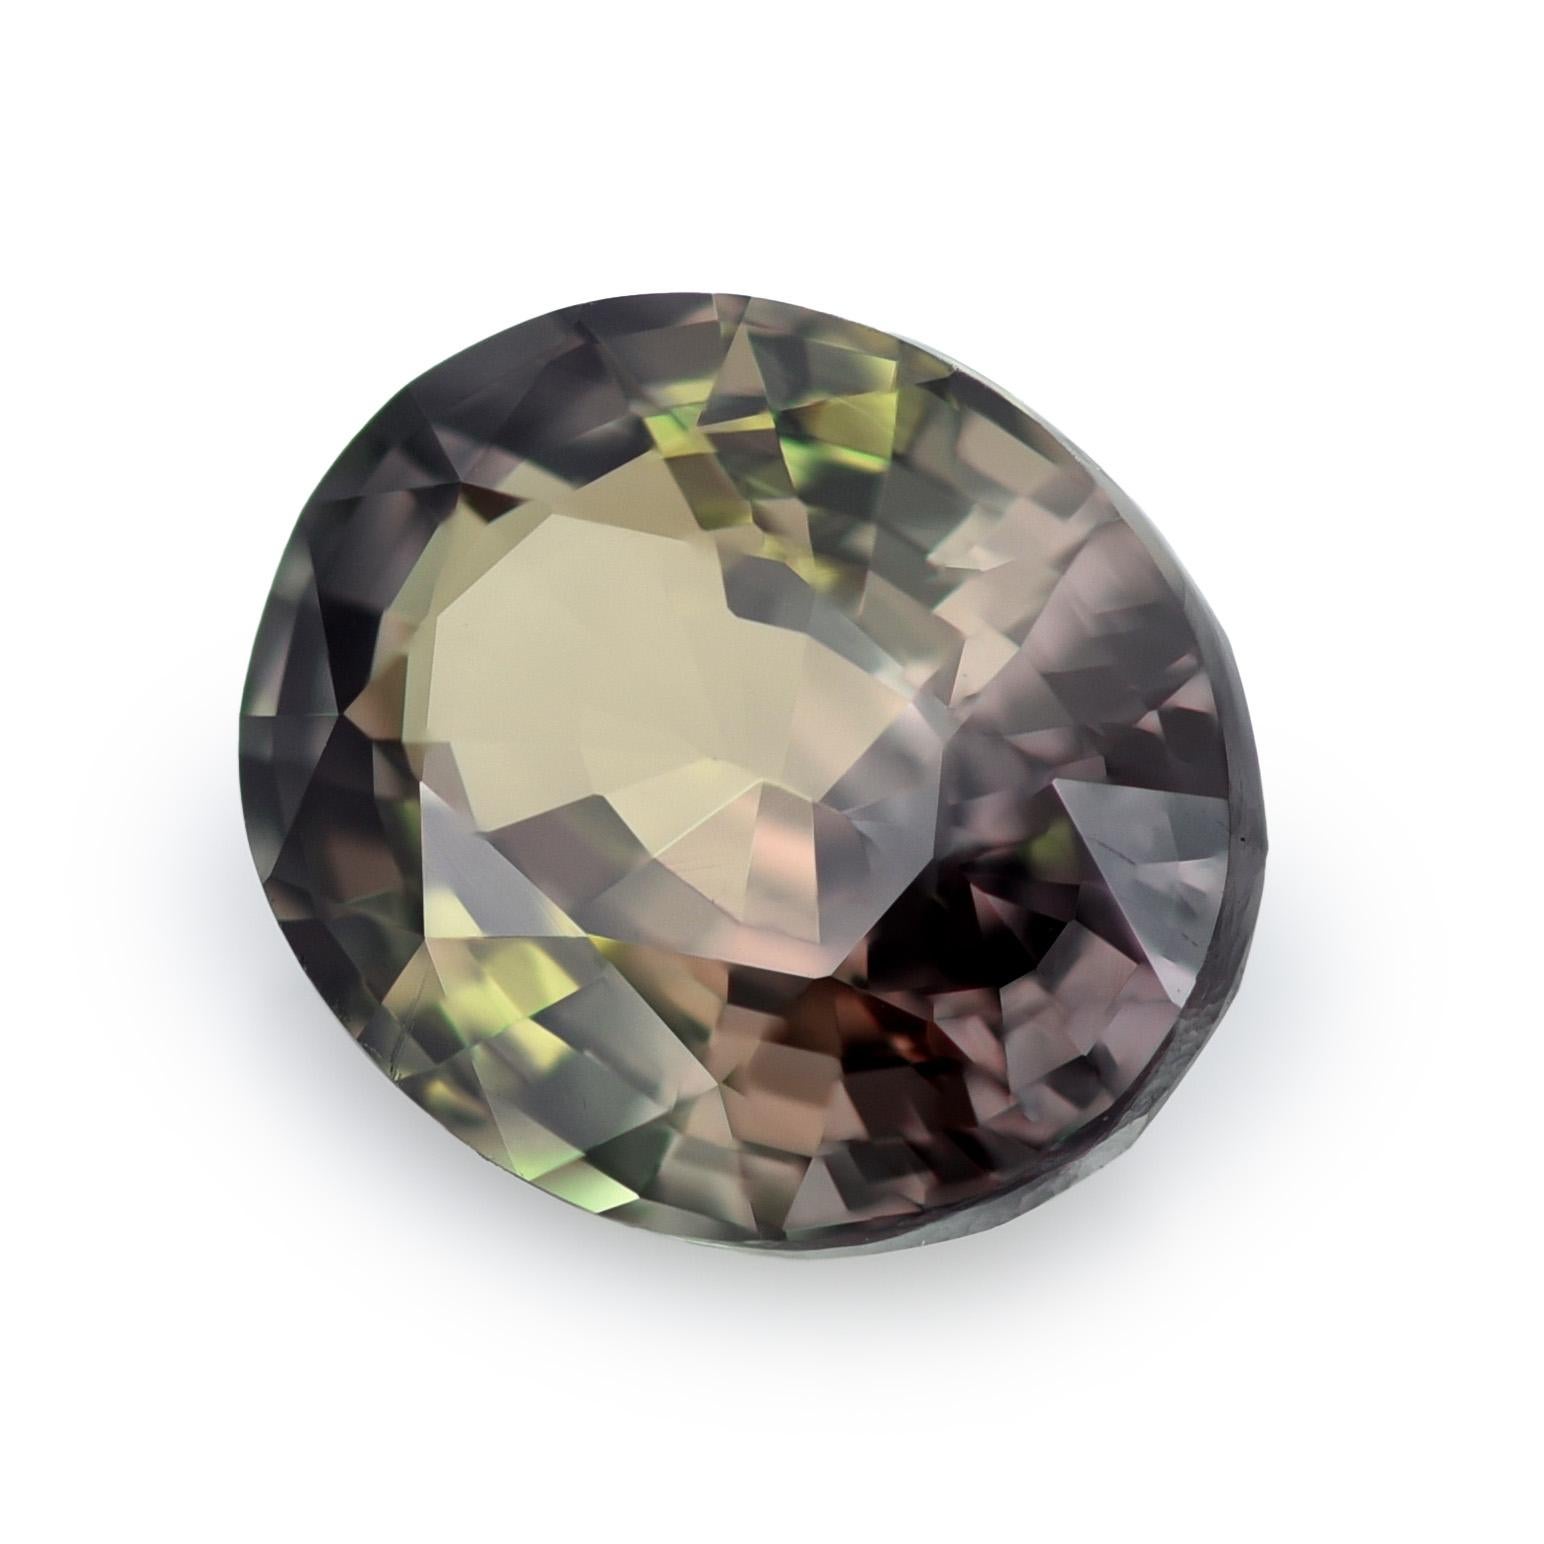 Taille mixte Alexandrite certifiée GIA, de 1,13 carats, dont la couleur change en vente